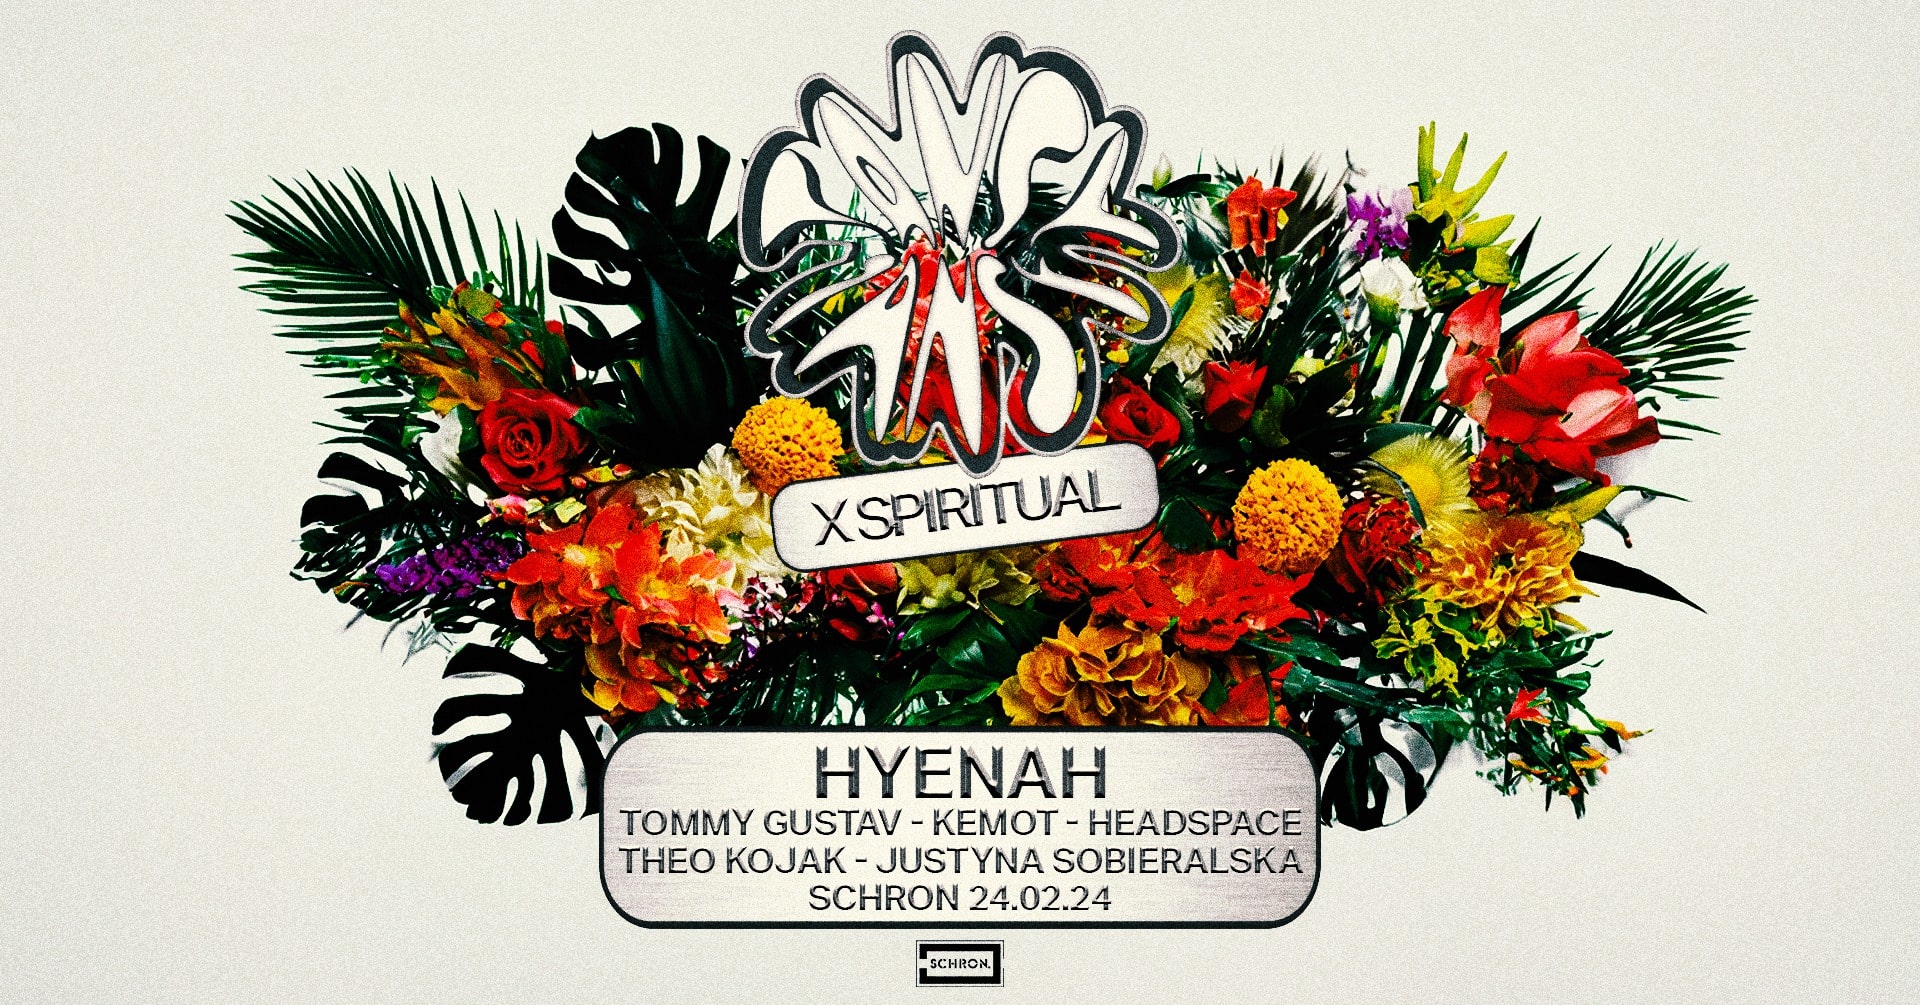 TANSY x Spiritual: Hyenah